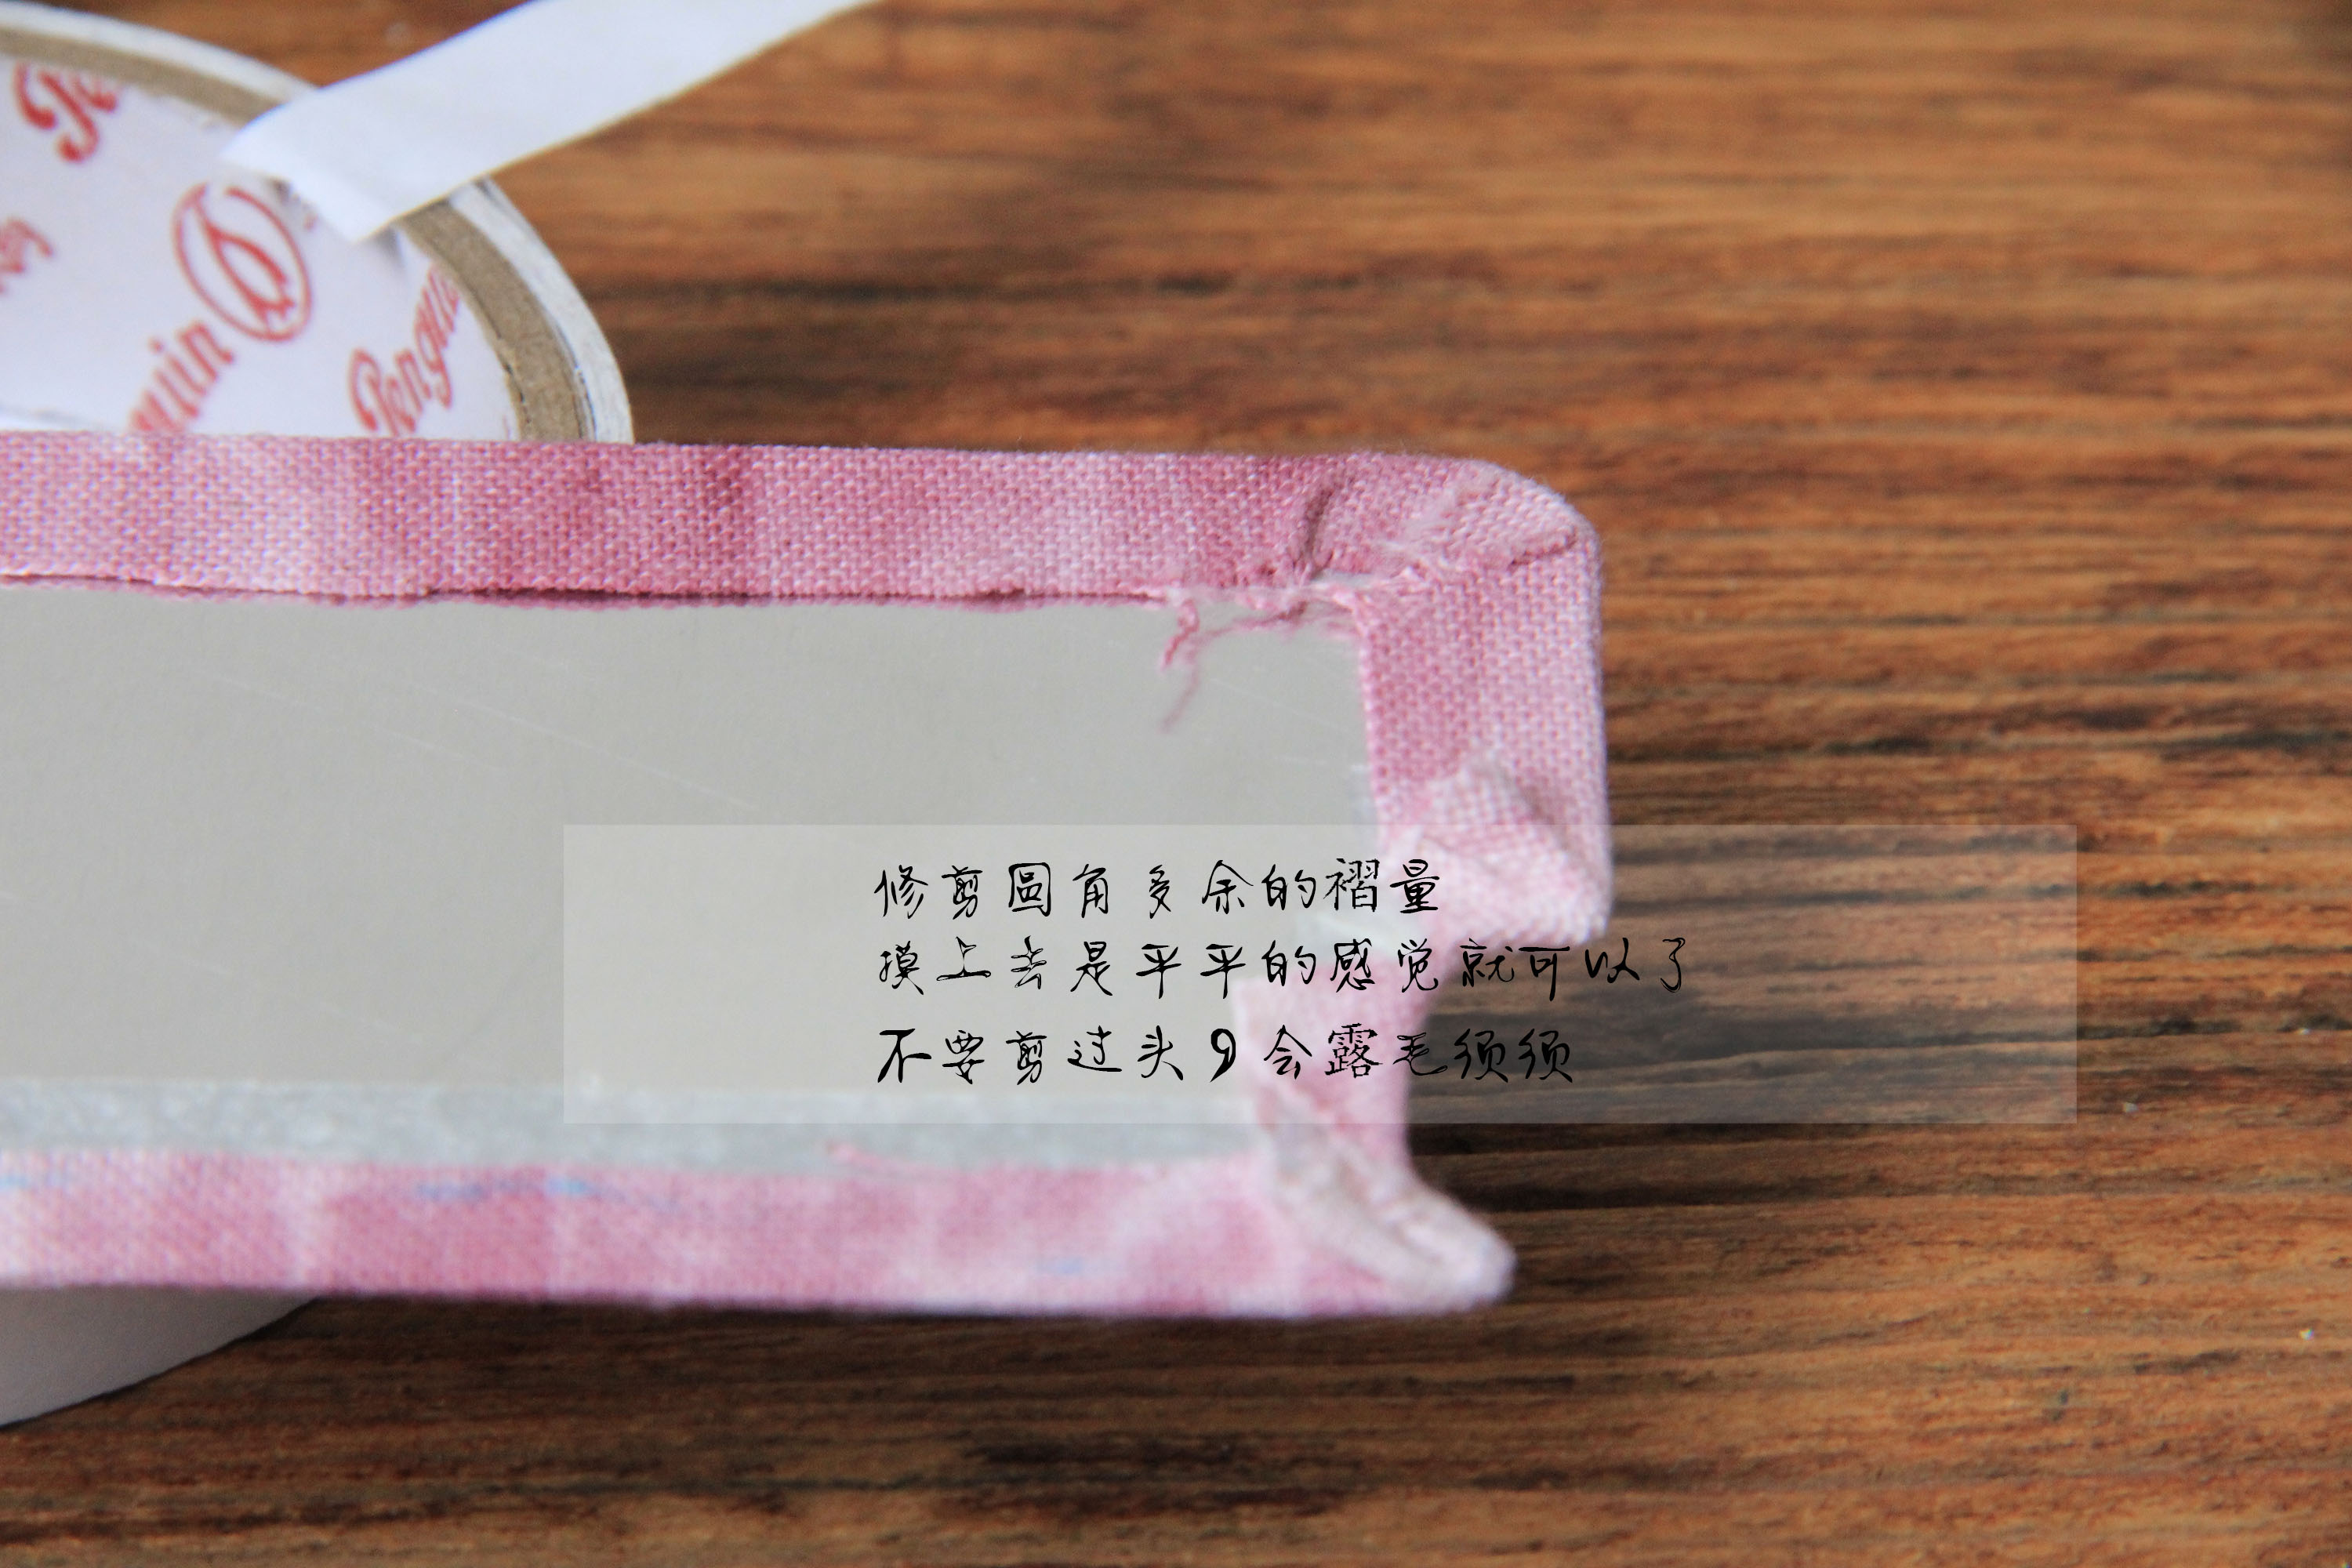 手工布艺作品超简单的贴布刺绣手机壳制作教程